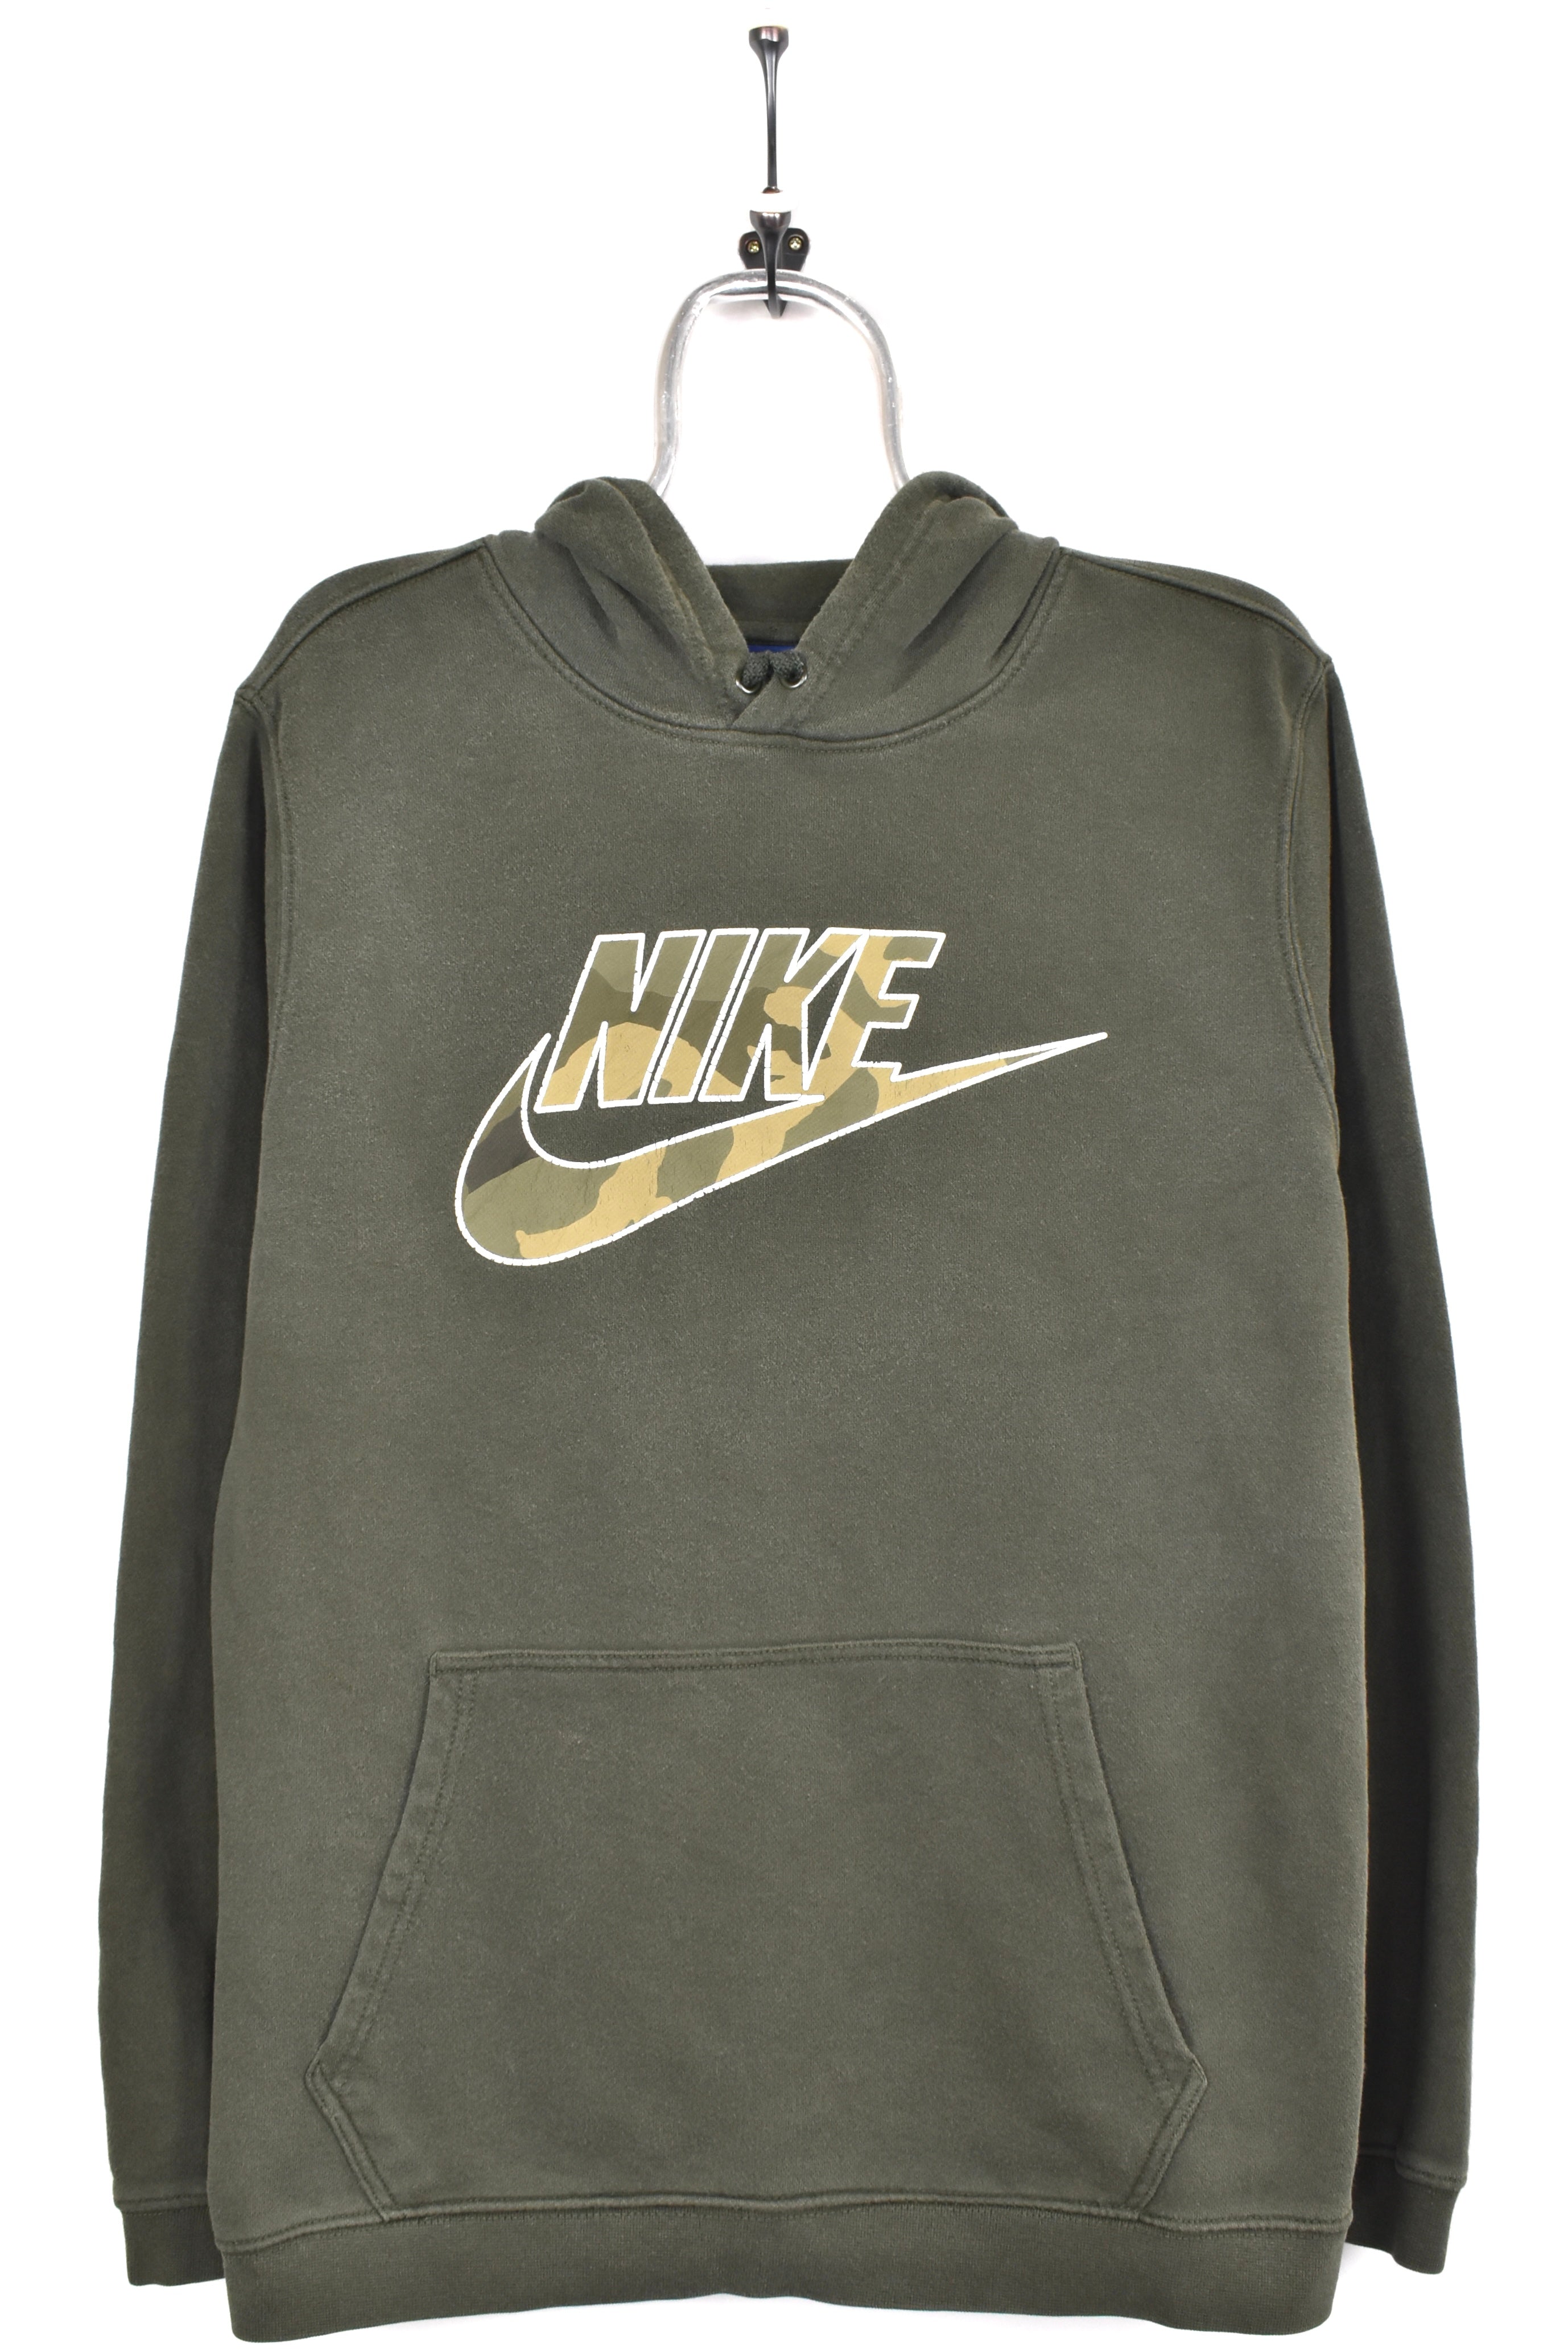 Vintage Nike hoodie, green graphic sweatshirt - AU Large NIKE